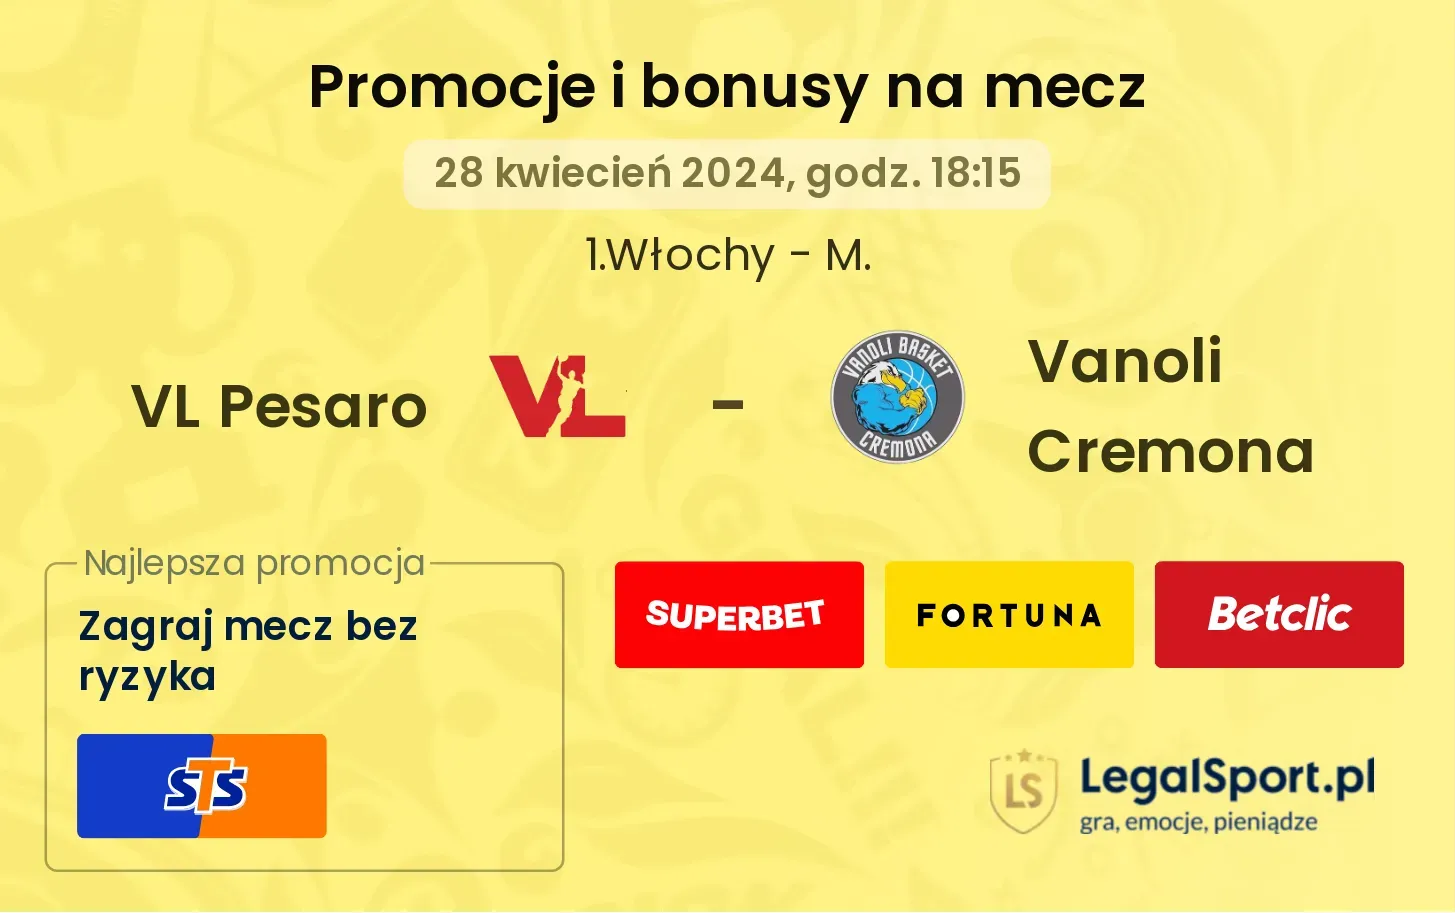 VL Pesaro - Vanoli Cremona promocje bonusy na mecz